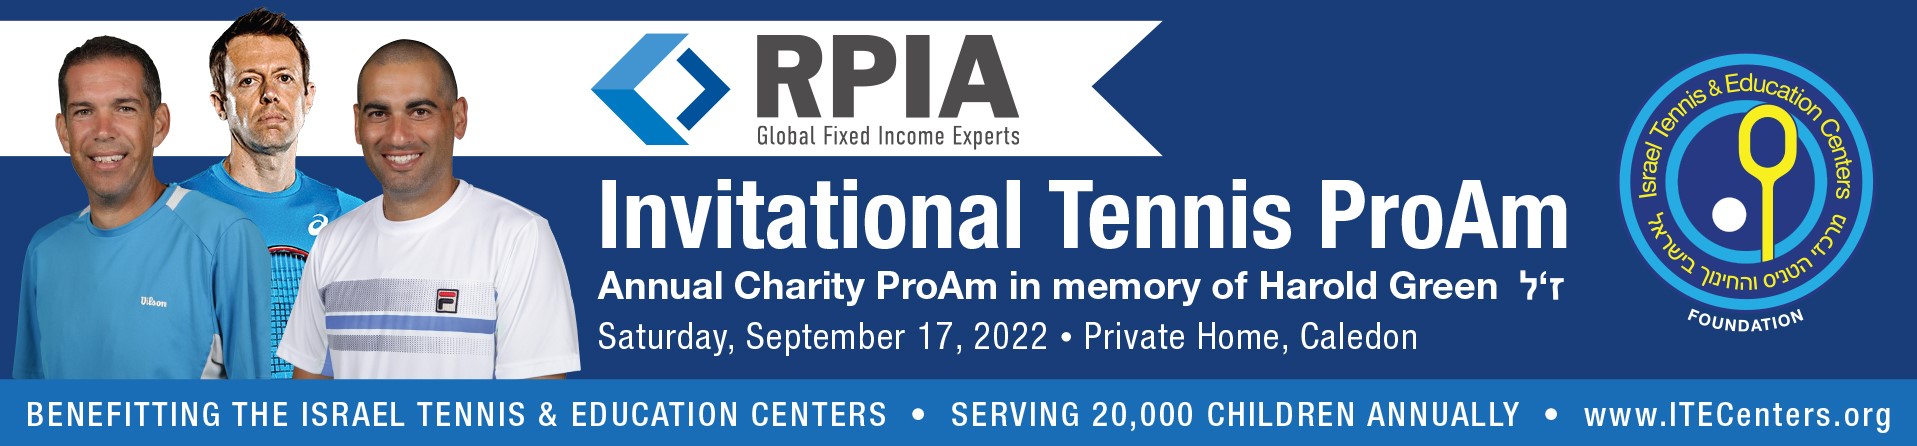 RPIA Invitational Tennis ProAm. 